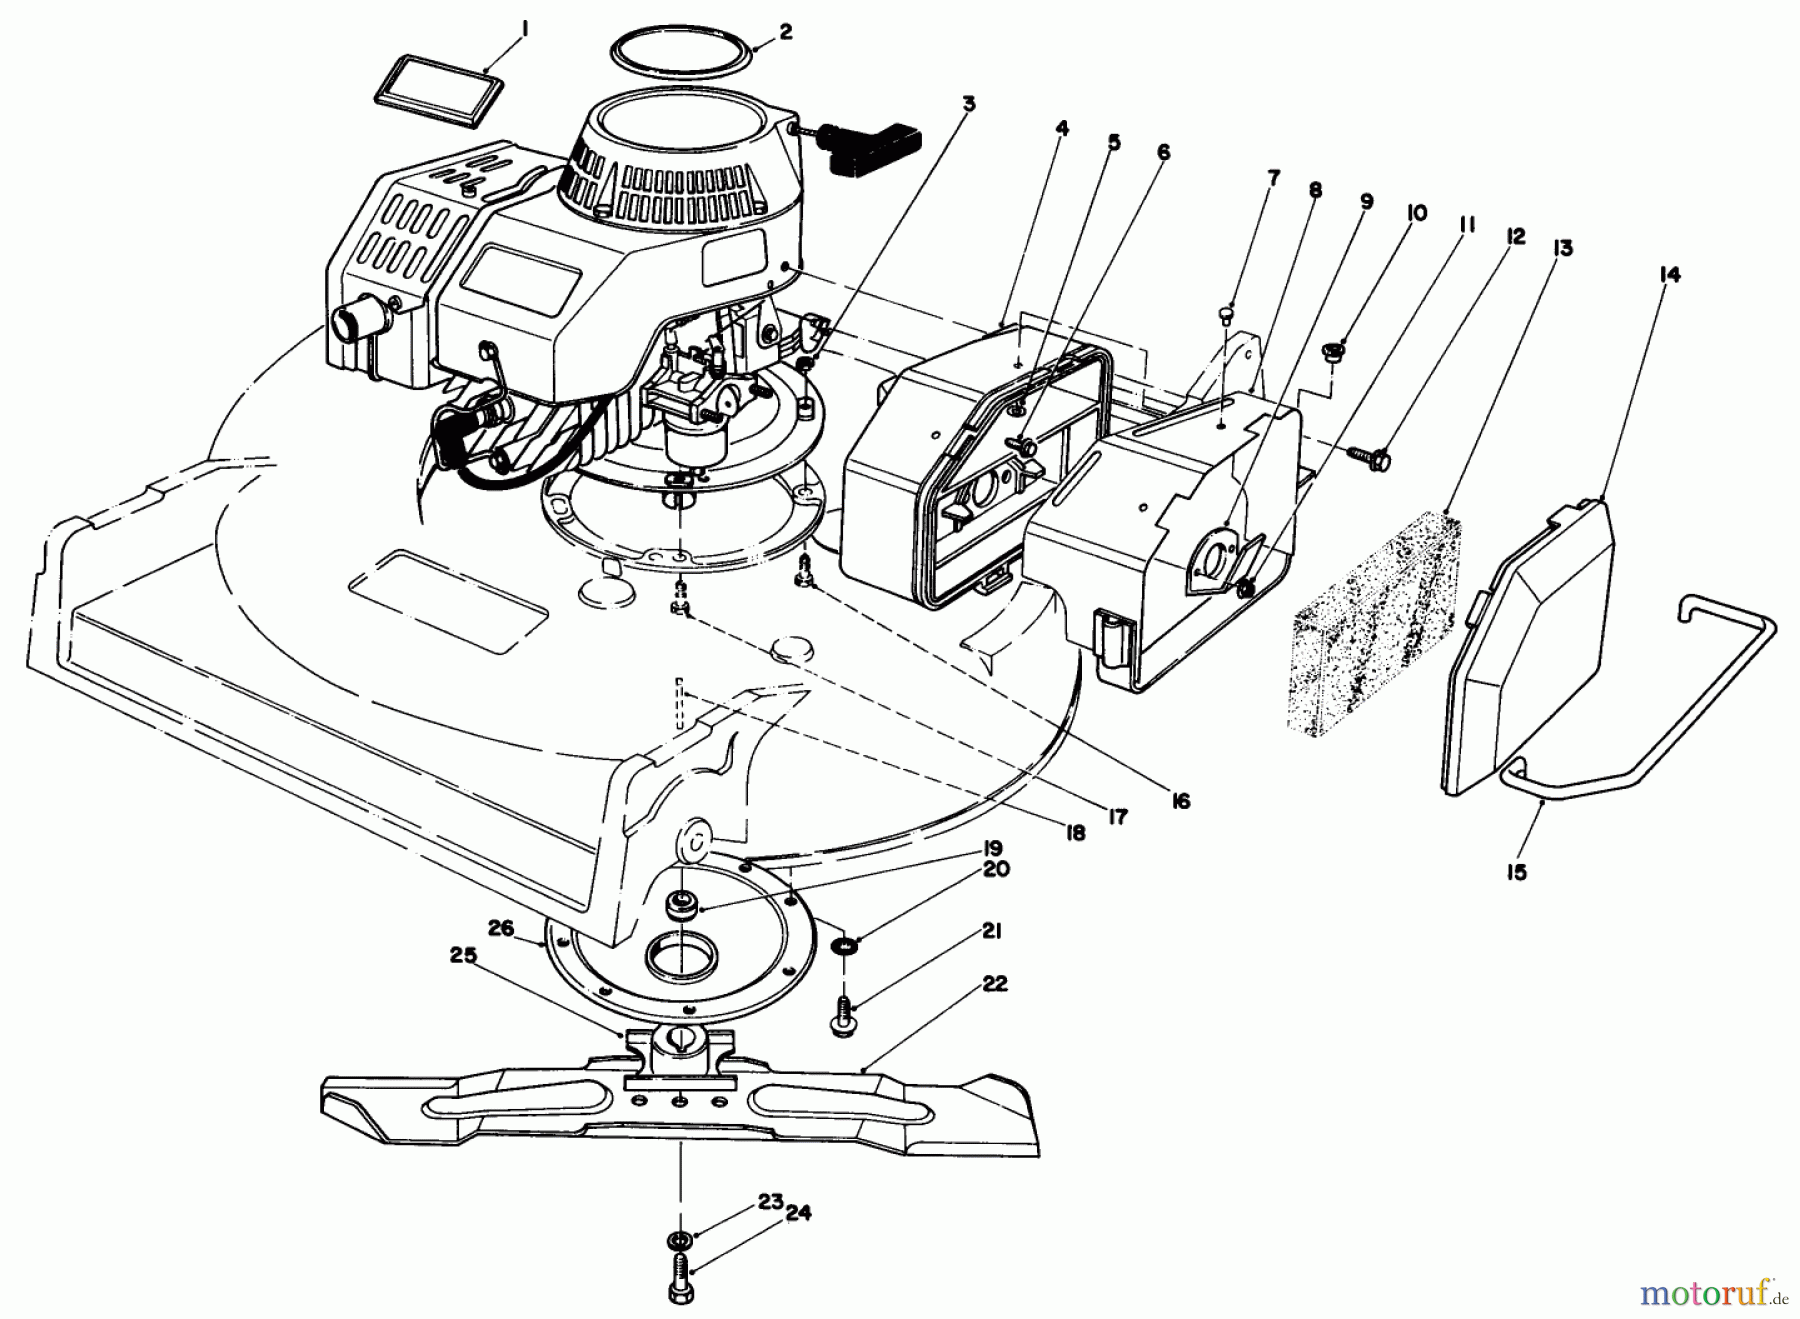  Toro Neu Mowers, Walk-Behind Seite 2 22035 - Toro Lawnmower, 1985 (5000001-5999999) ENGINE ASSEMBLY (MODEL 22030)